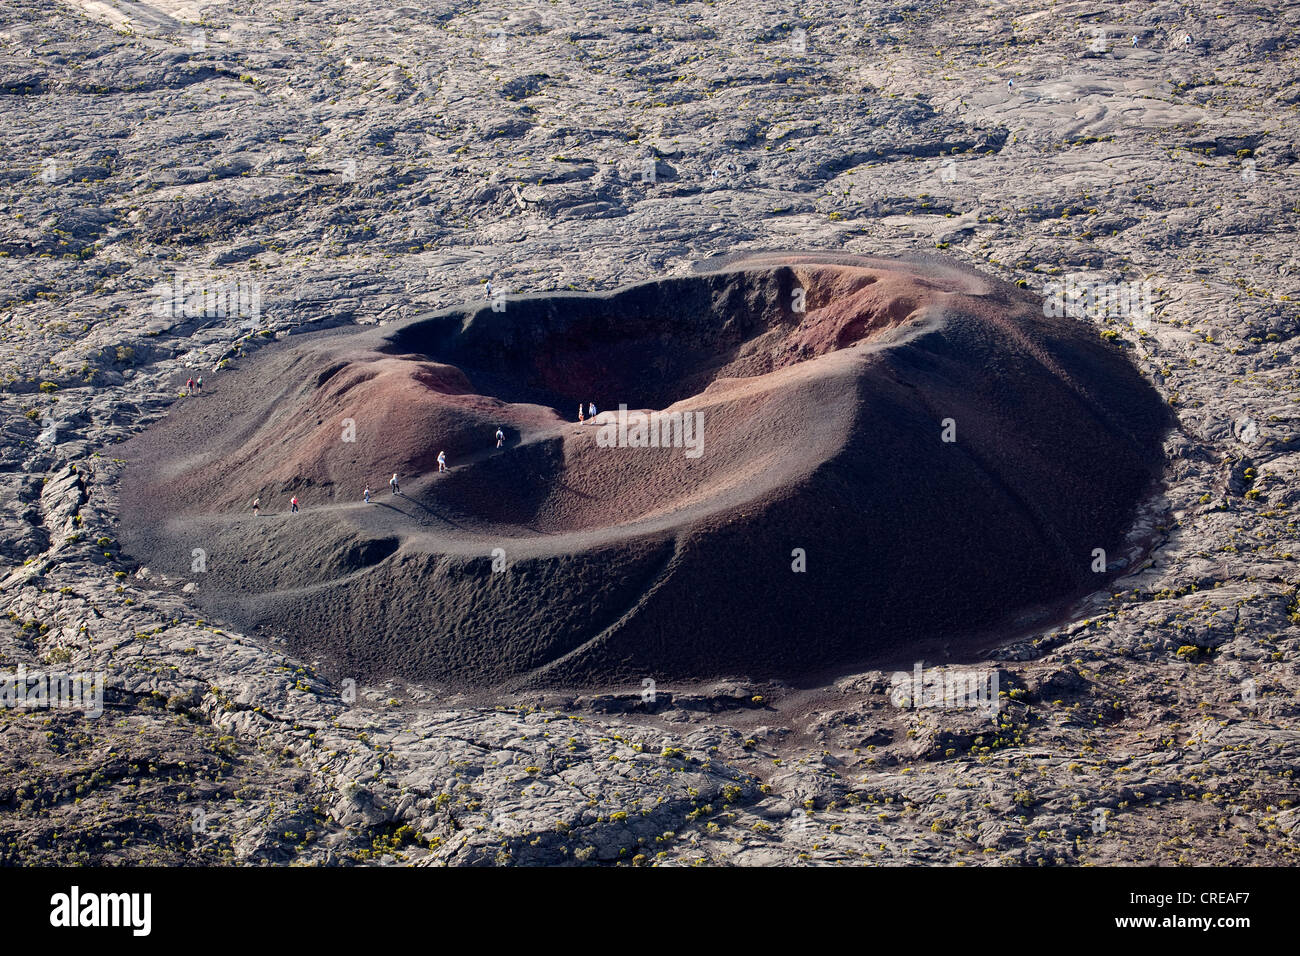 Le Formica Leo volcan dans la région volcanique du volcan Piton de la Fournaise, La Réunion, océan Indien Banque D'Images